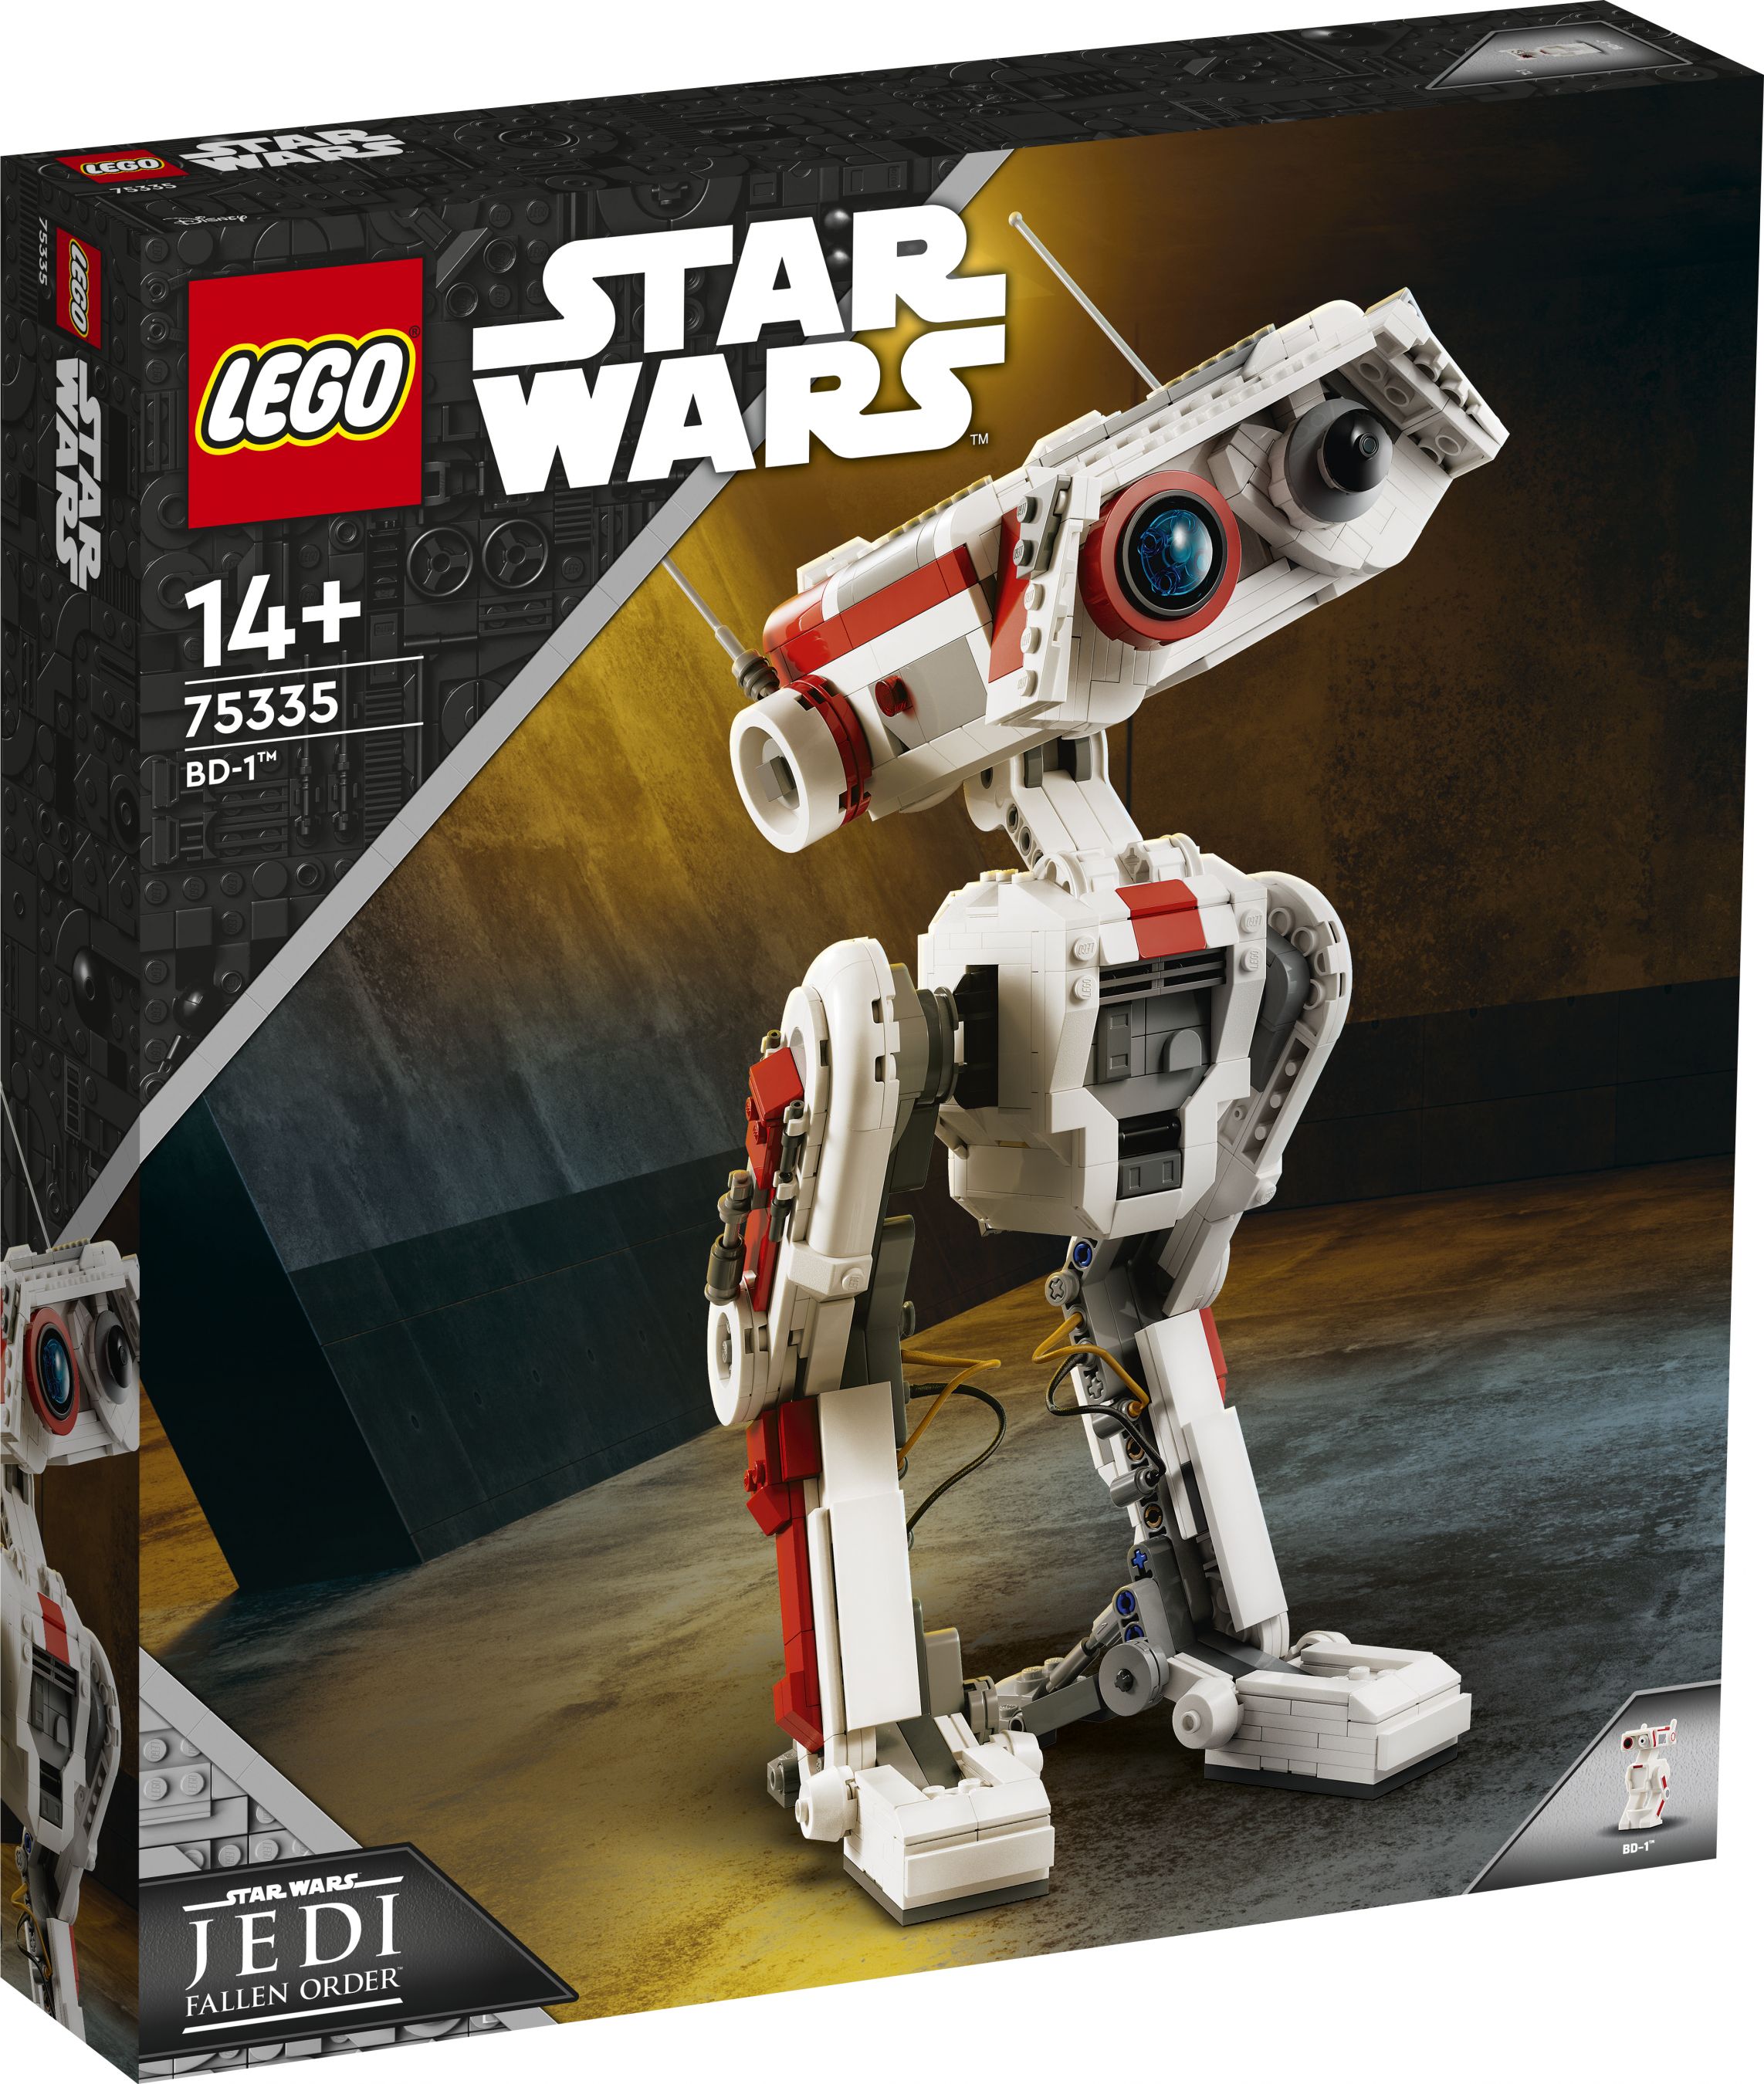 LEGO Star Wars 75335 BD-1™ LEGO_75335_Box1_v29.jpg